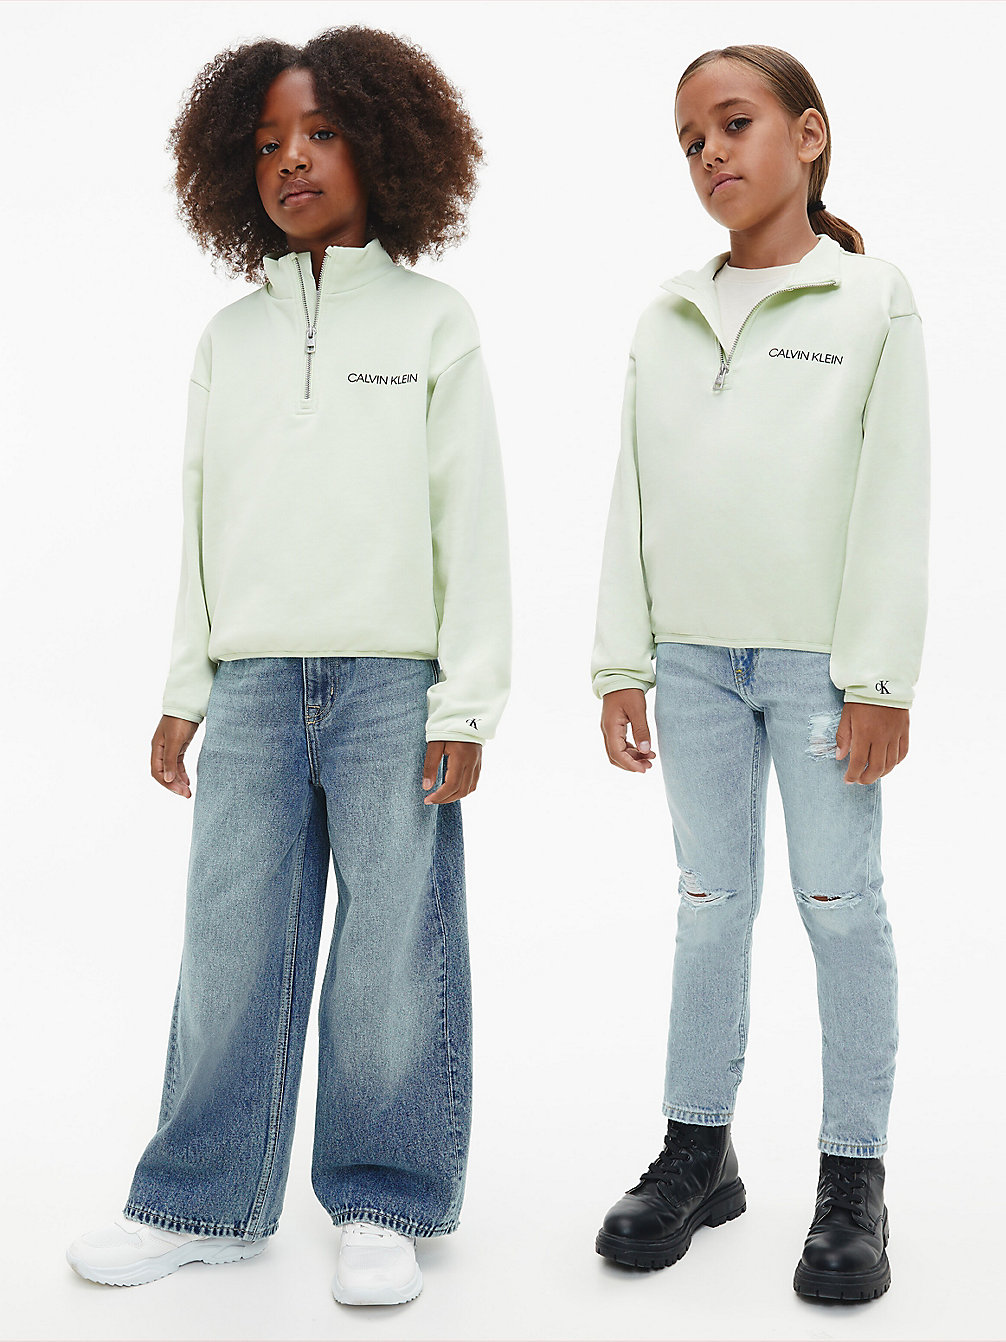 SEAFOAM GREEN Lässiges Unisex Sweatshirt Mit Reißverschlusskragen undefined kids unisex Calvin Klein